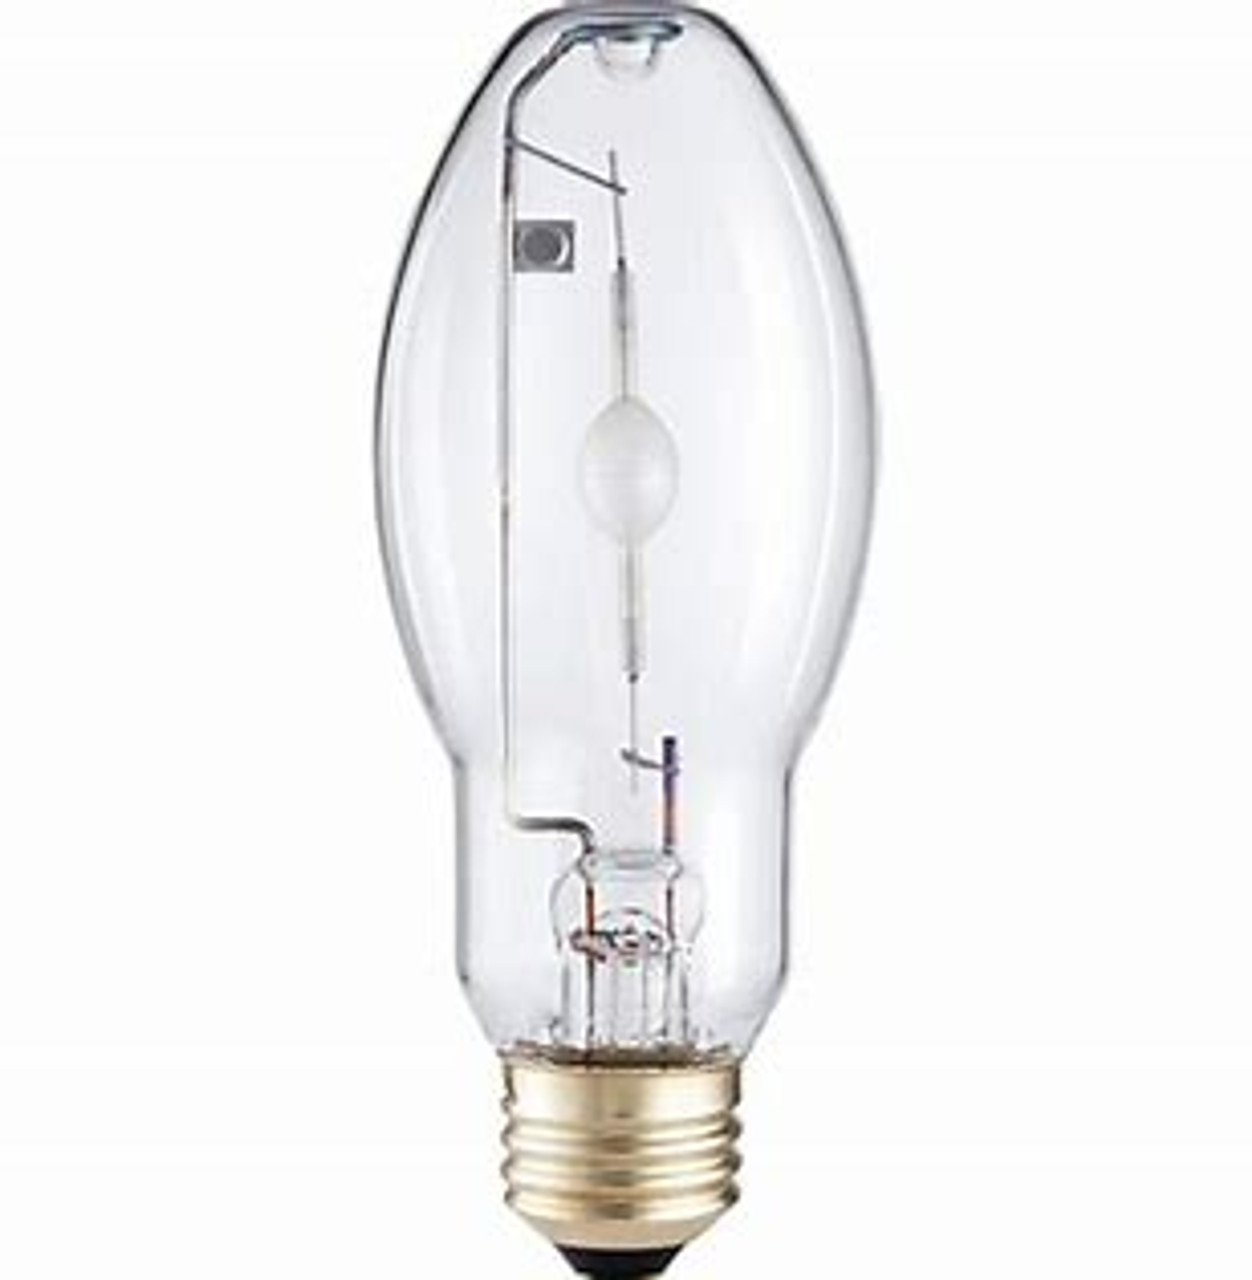 ui baas geloof Philips 42988-6 100 Watt Metal Halide Lamp